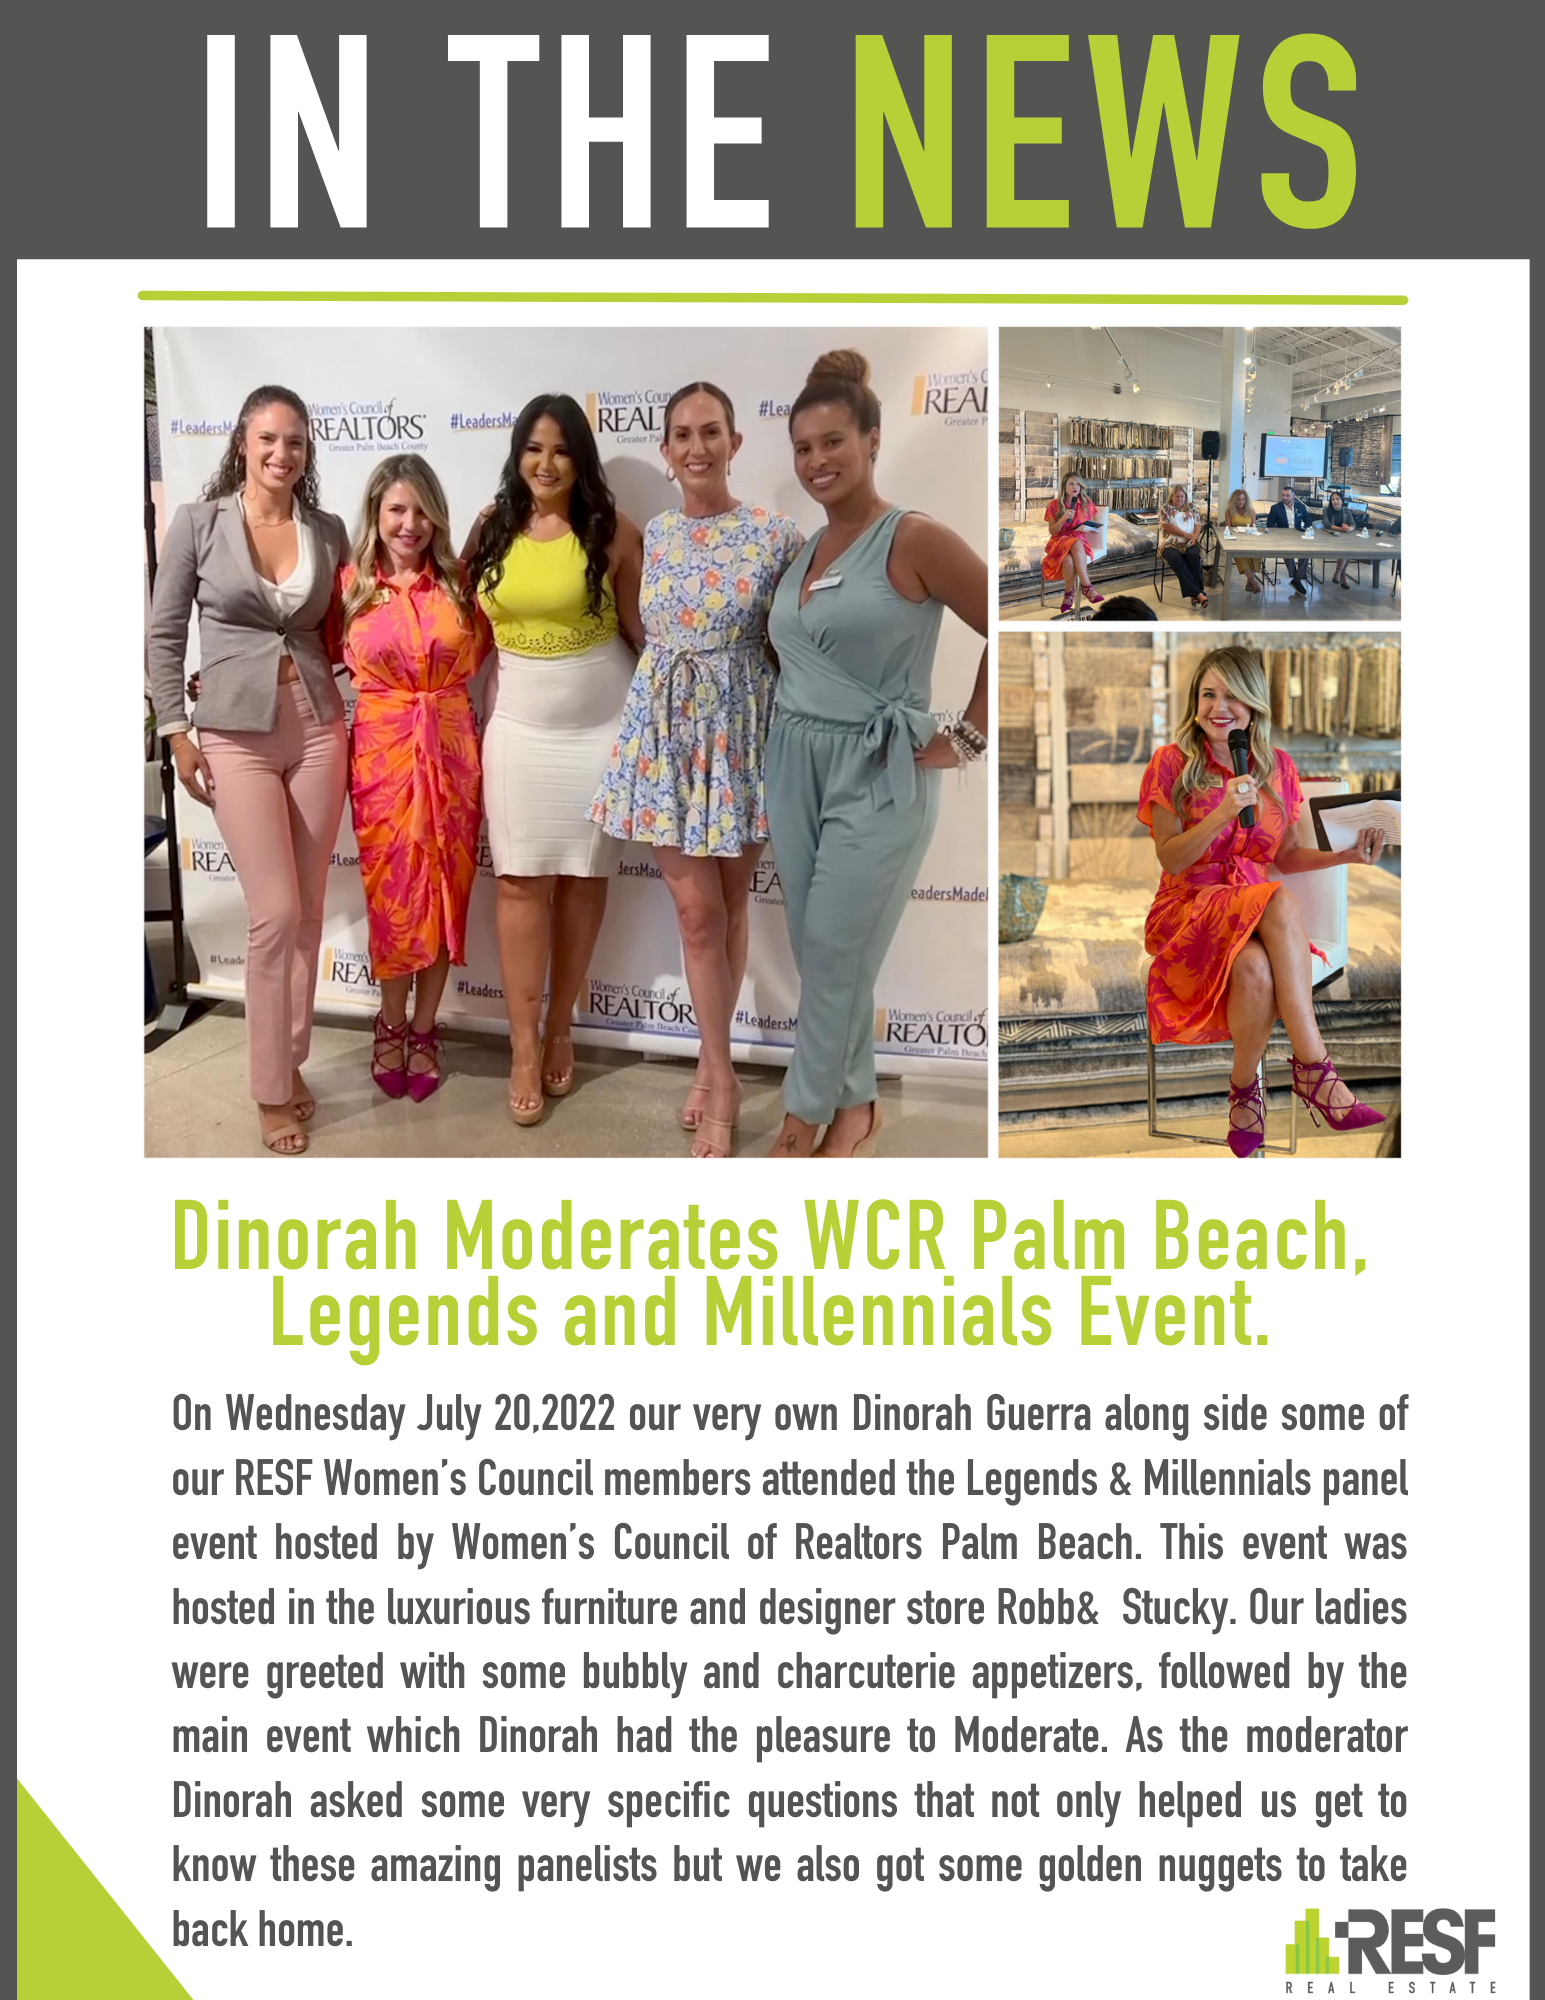 Dinorah Moderates WCR Palm Beach, Legends and Millennials Event.